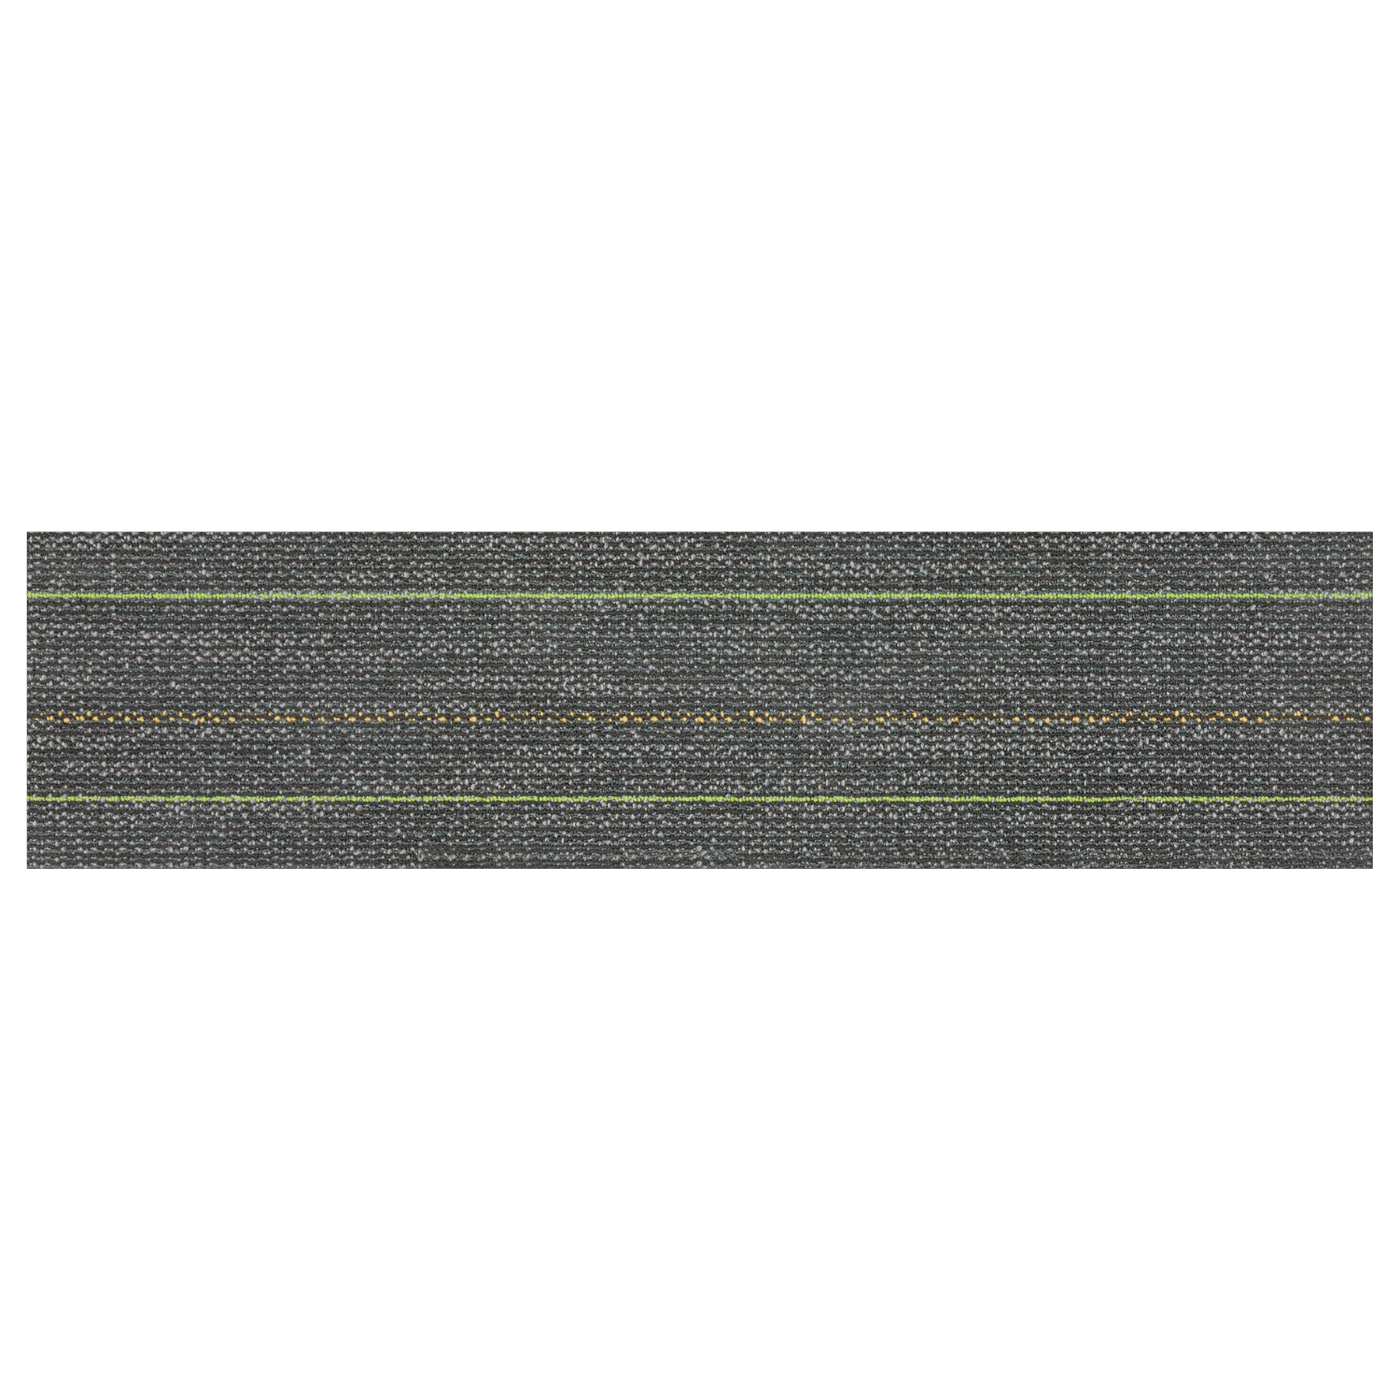 Warmth - Innovflor Carpet Tiles